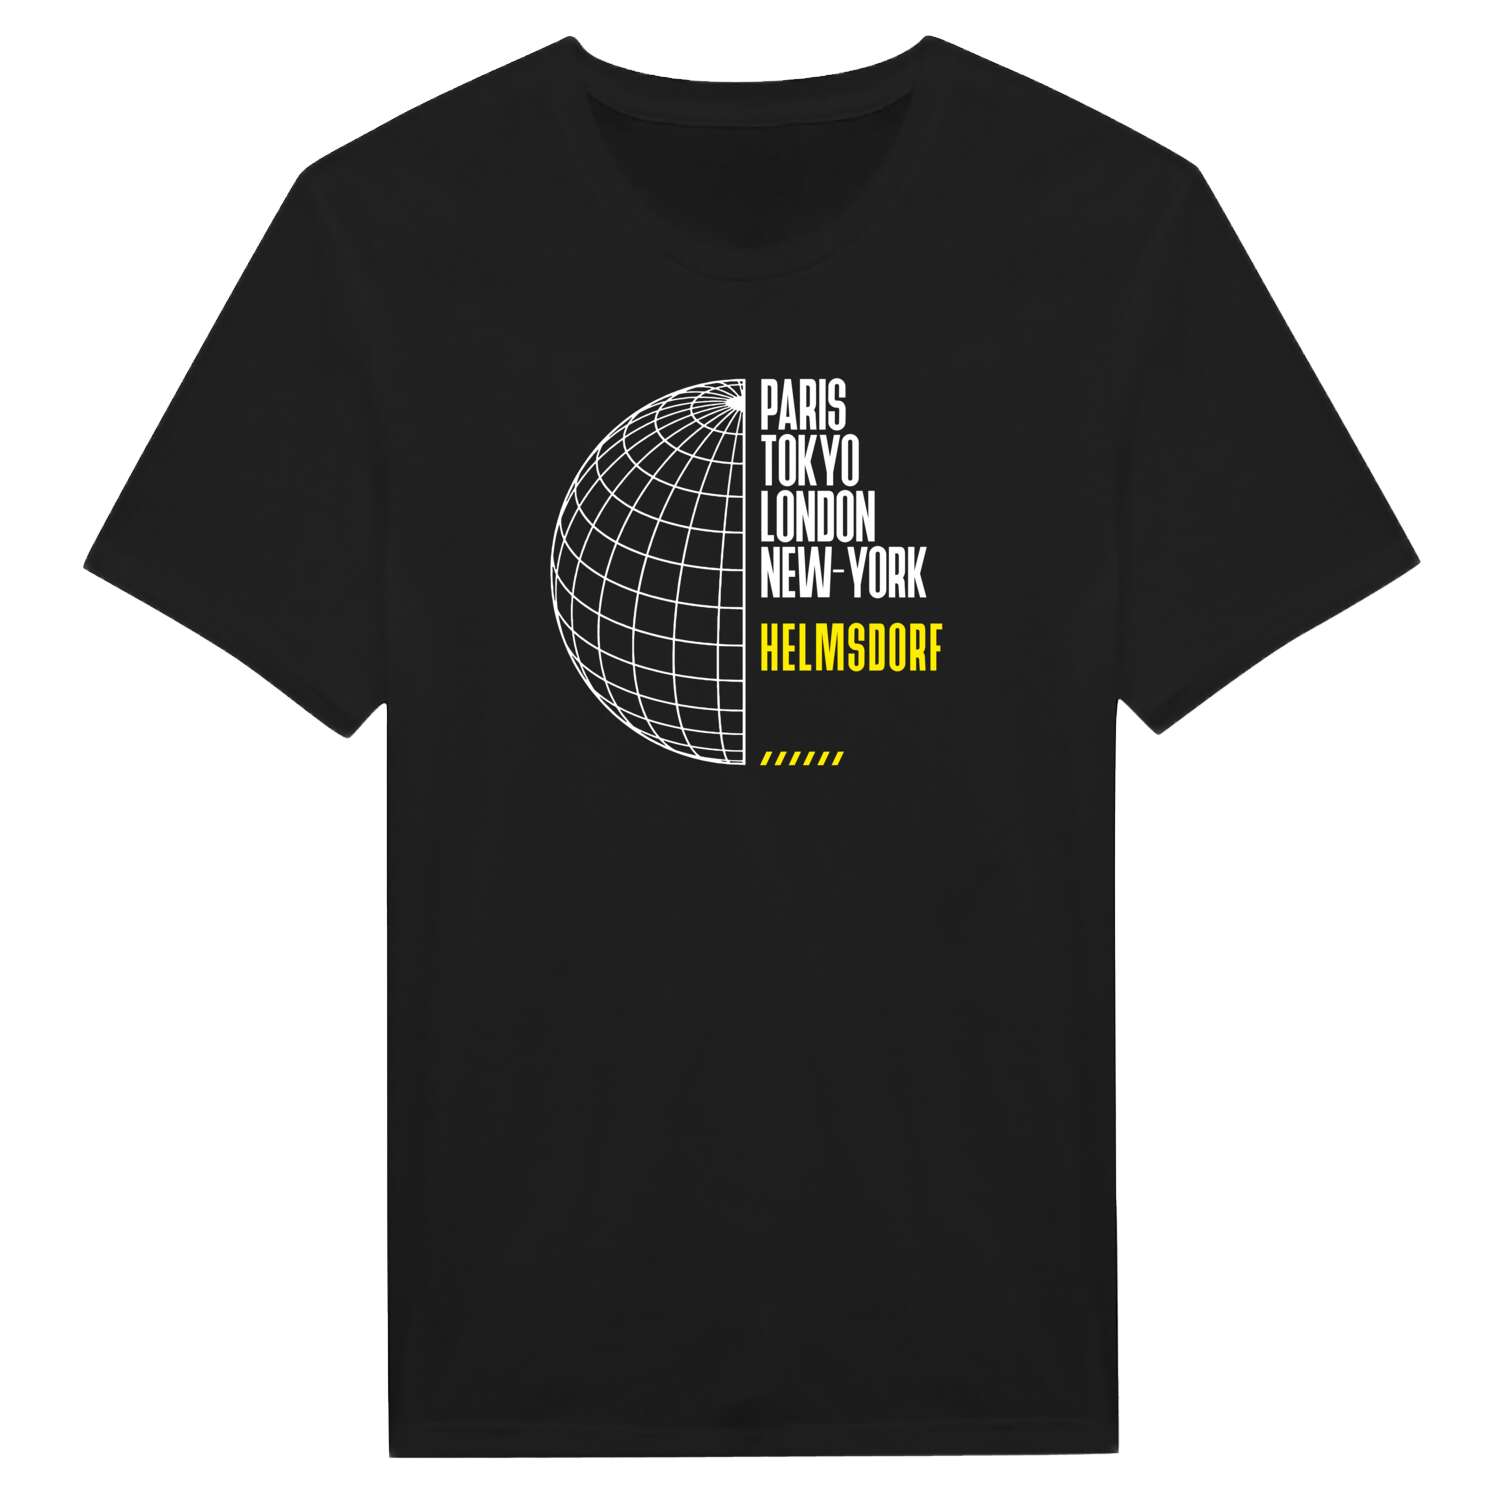 Helmsdorf T-Shirt »Paris Tokyo London«